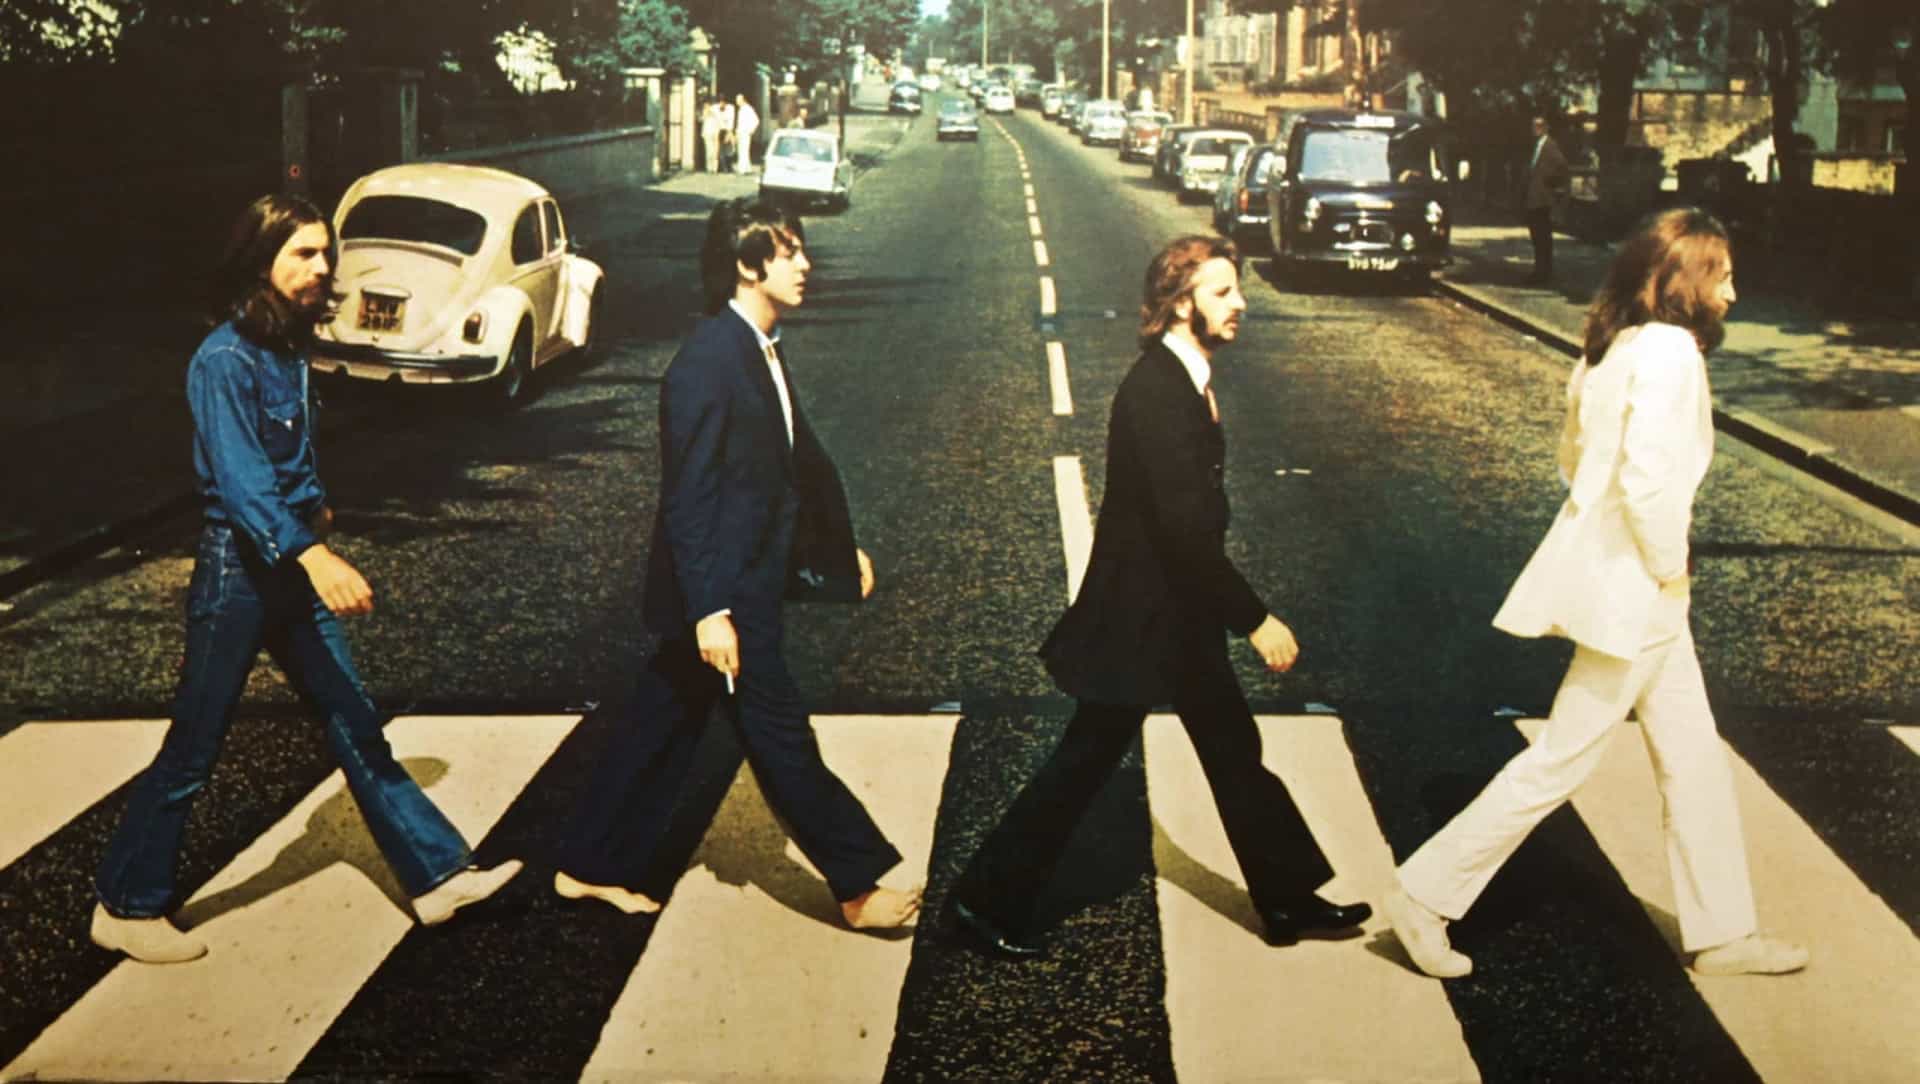 <p>Der berühmte Song "Yesterday" der Beatles wurde komplett von John Lennon geschrieben, aber aufgrund einer Vereinbarung, die er und Paul McCartney getroffen haben, um die Anerkennung für alle ihre Songs 50/50 zu teilen, werden sie beide als Autoren genannt.</p>